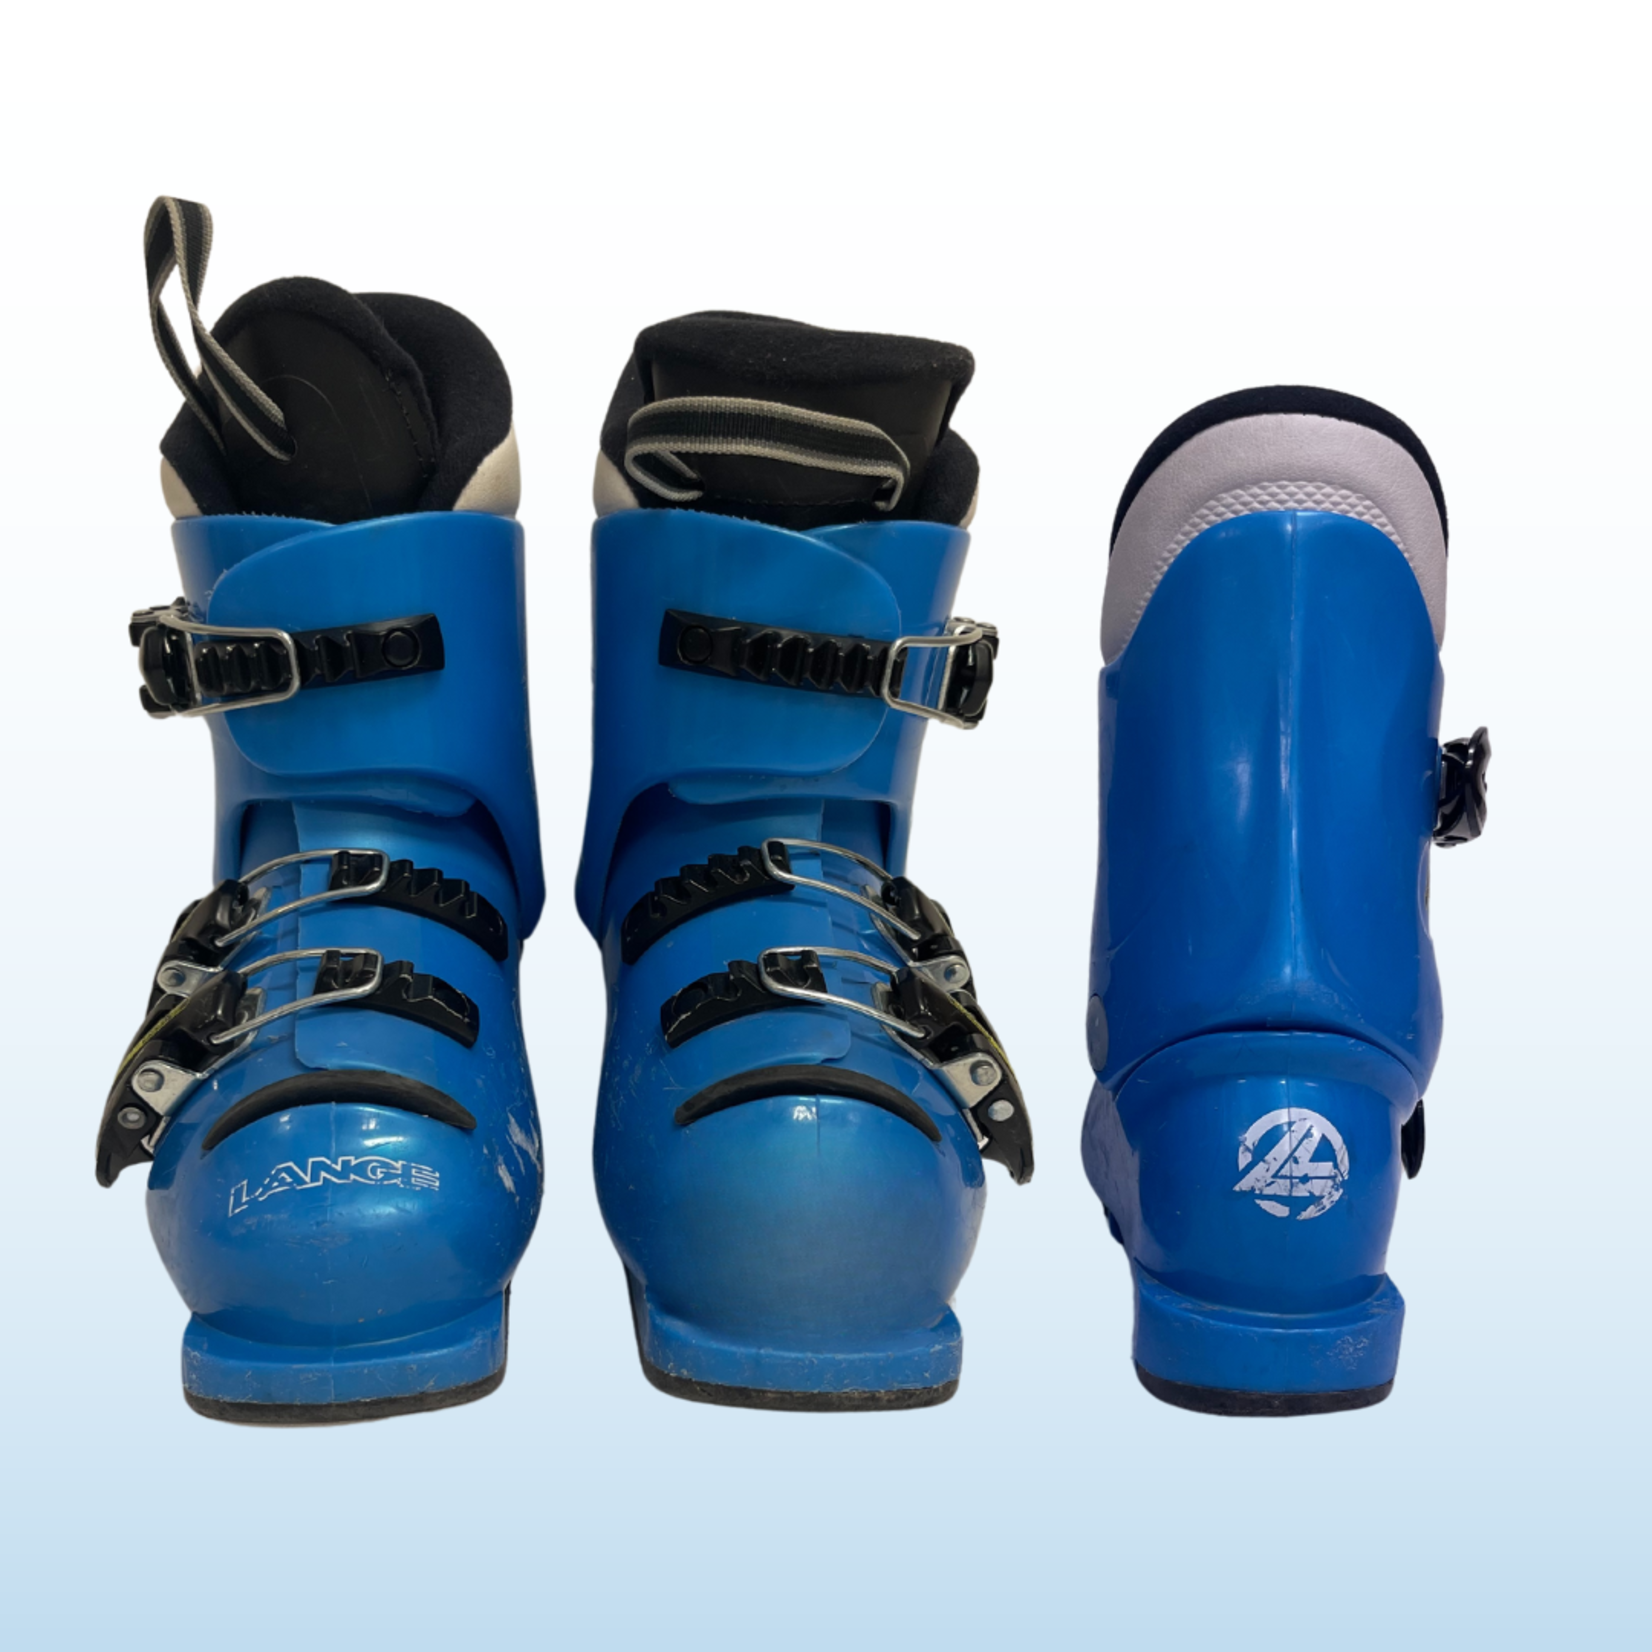 Lange Lange Team 7 Kids Ski Boots, Size 18.5